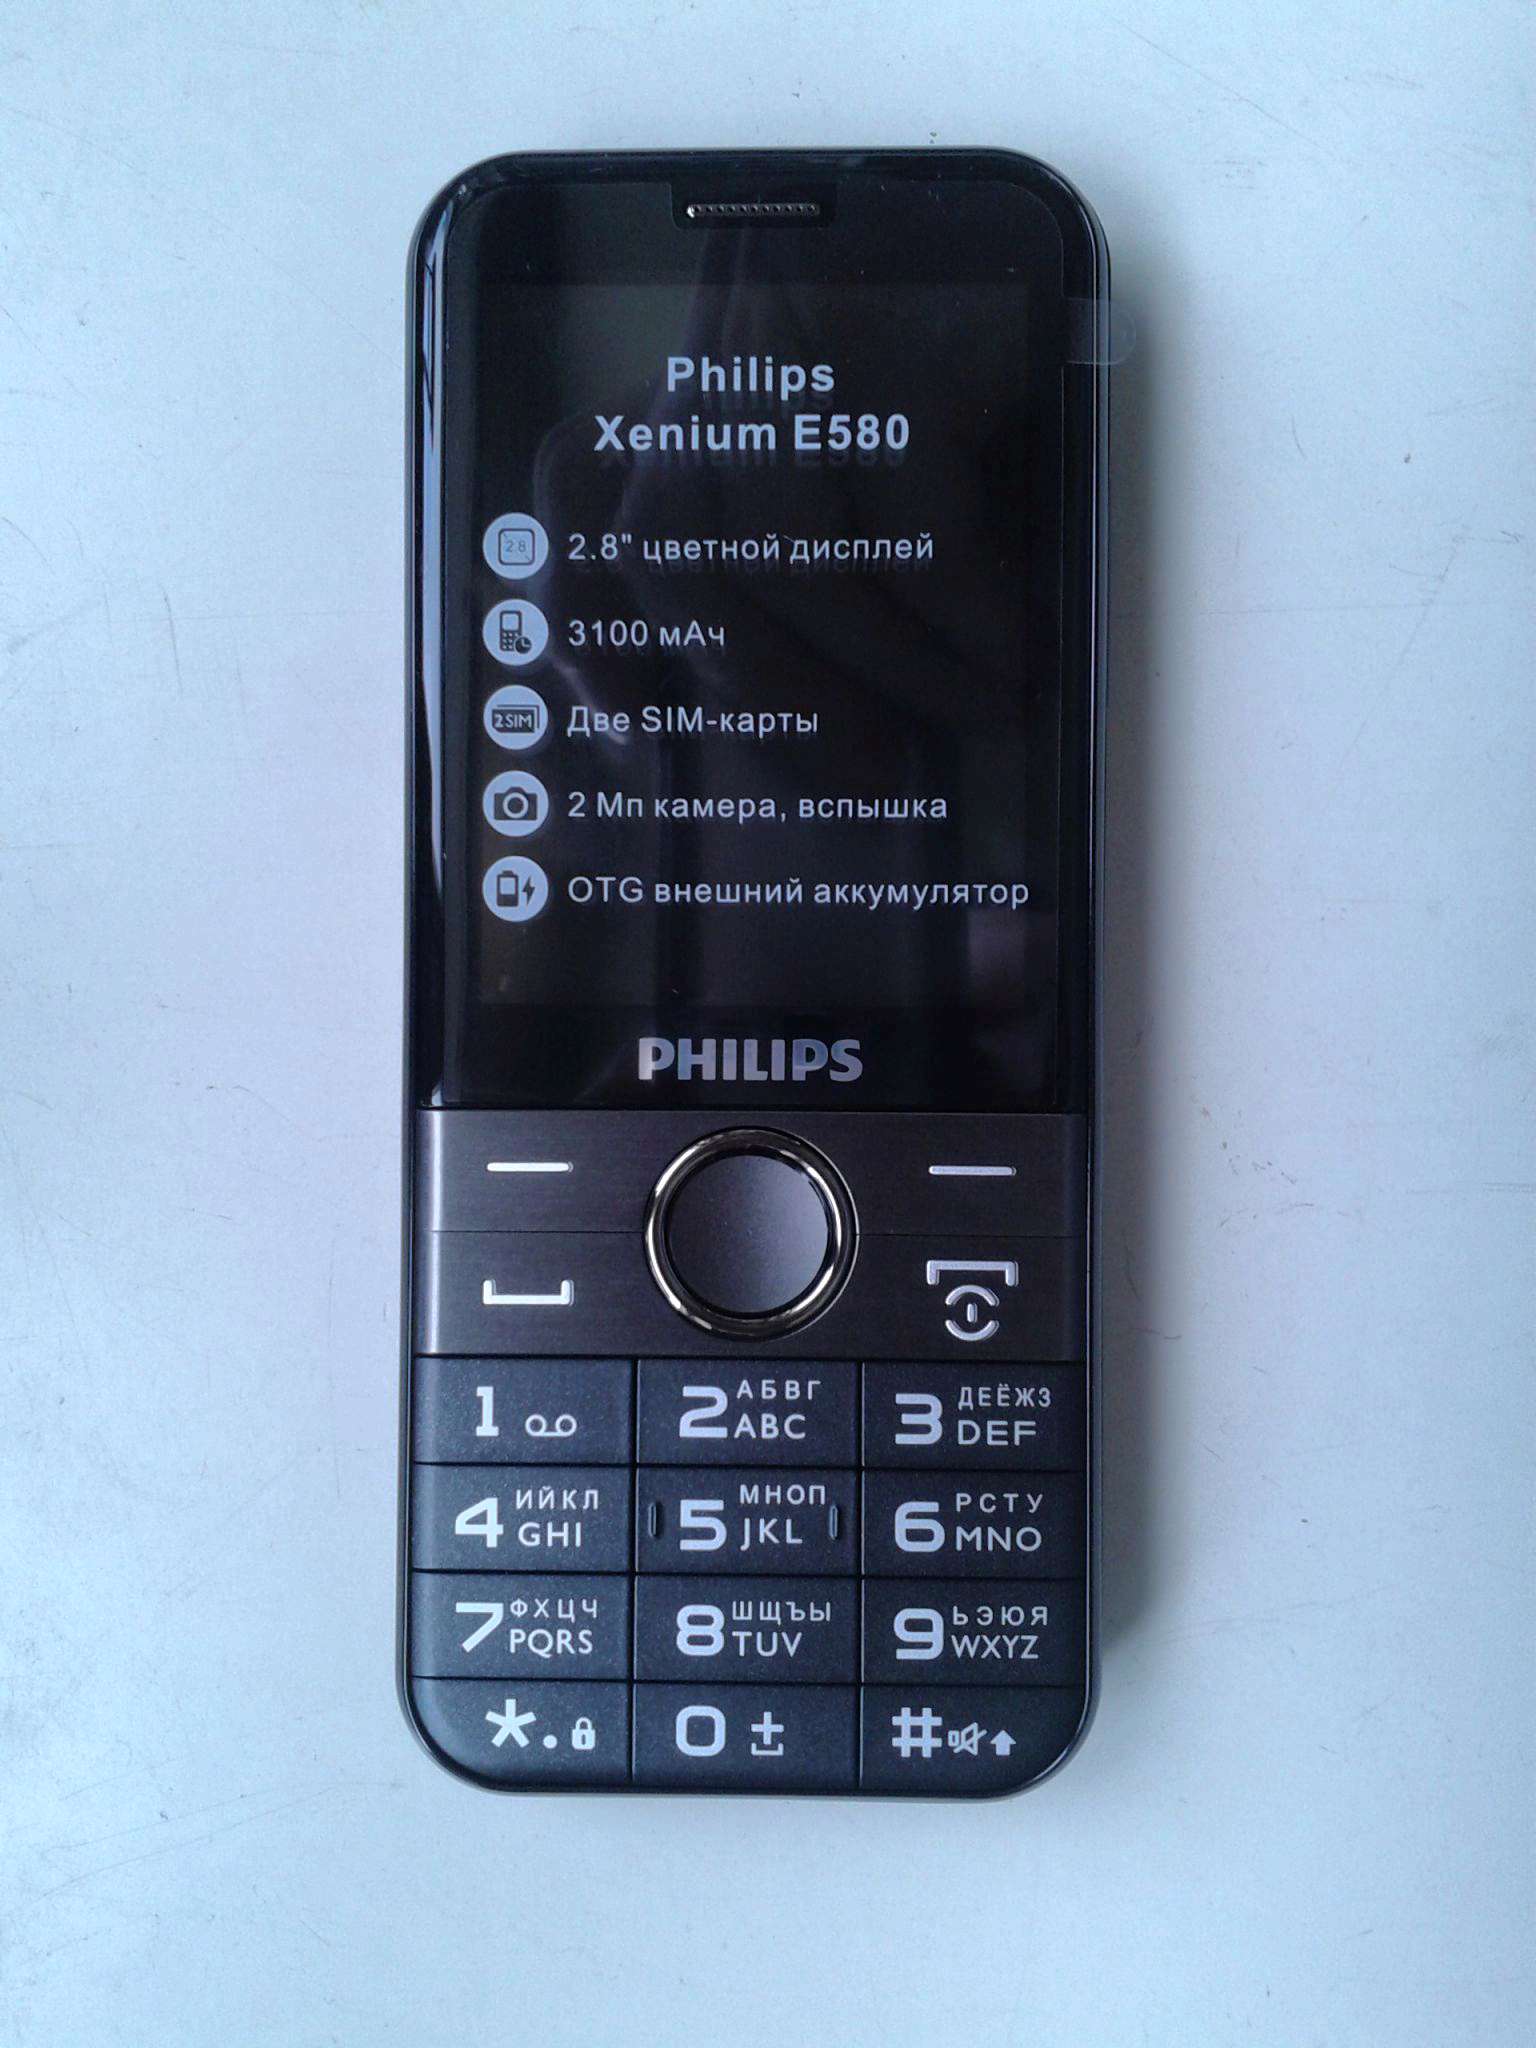 Xenium e590 купить. Philips Xenium e580. Philips Xenium 580. Филипс хениум е 580. Philips Xenium e580 (черный).